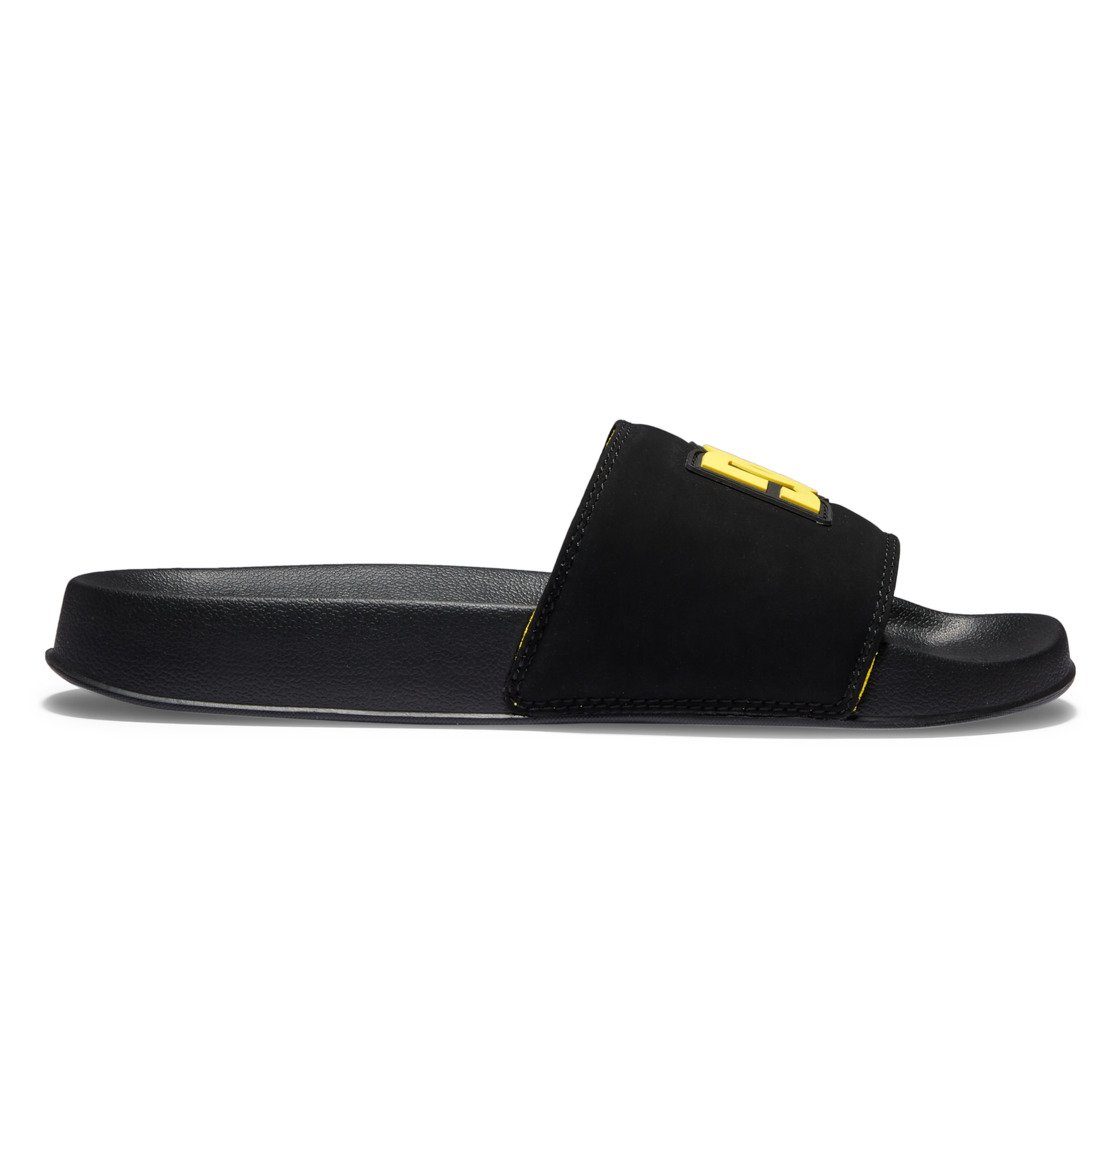 Shoes Sandale DC DC Black/Black/Yellow